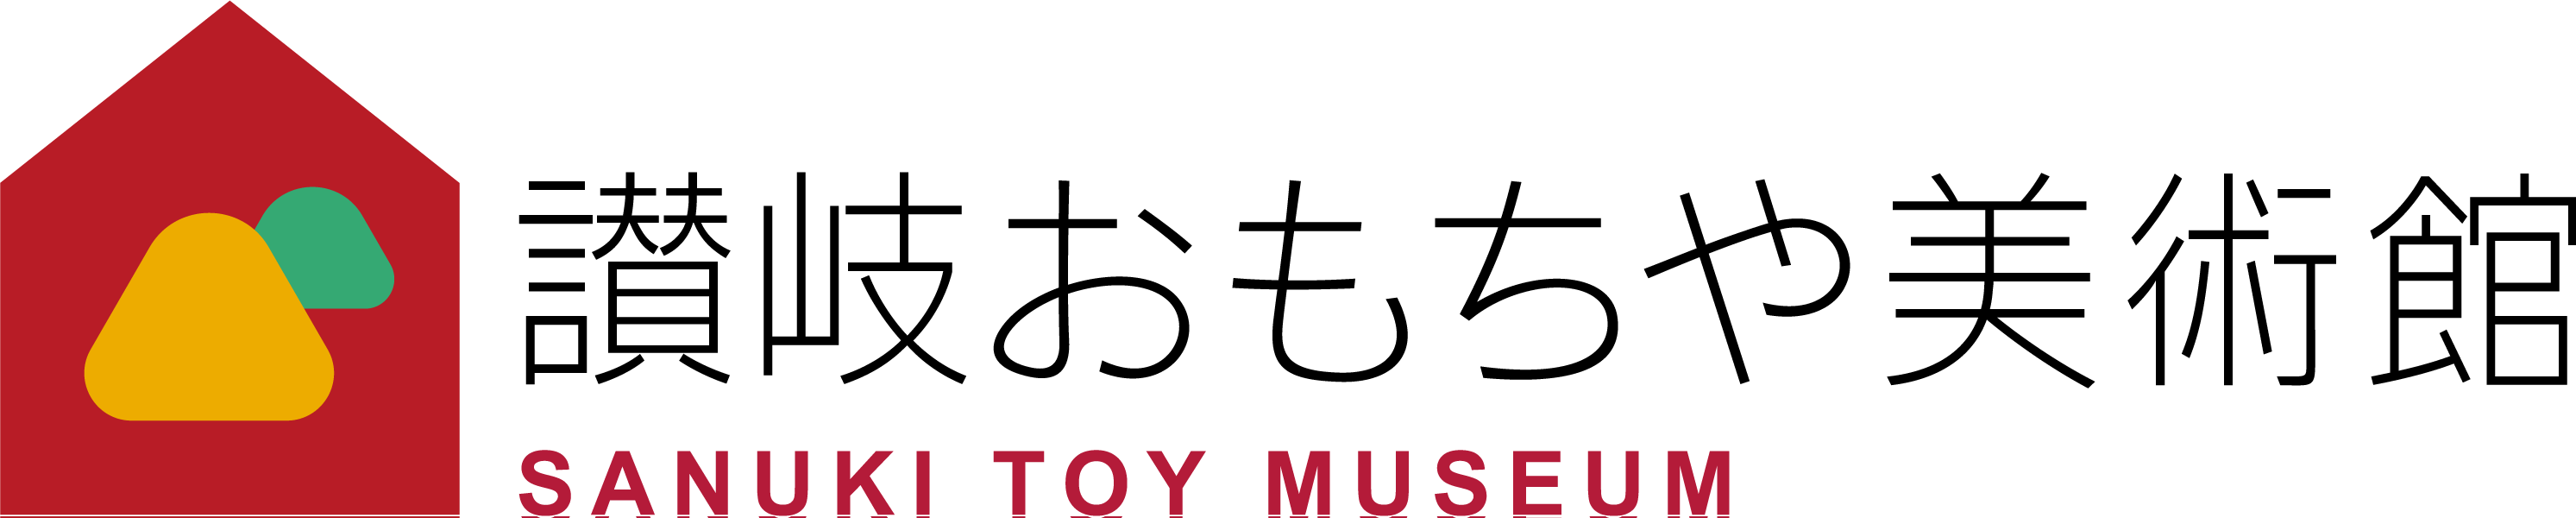 おもちゃ美術館のロゴ